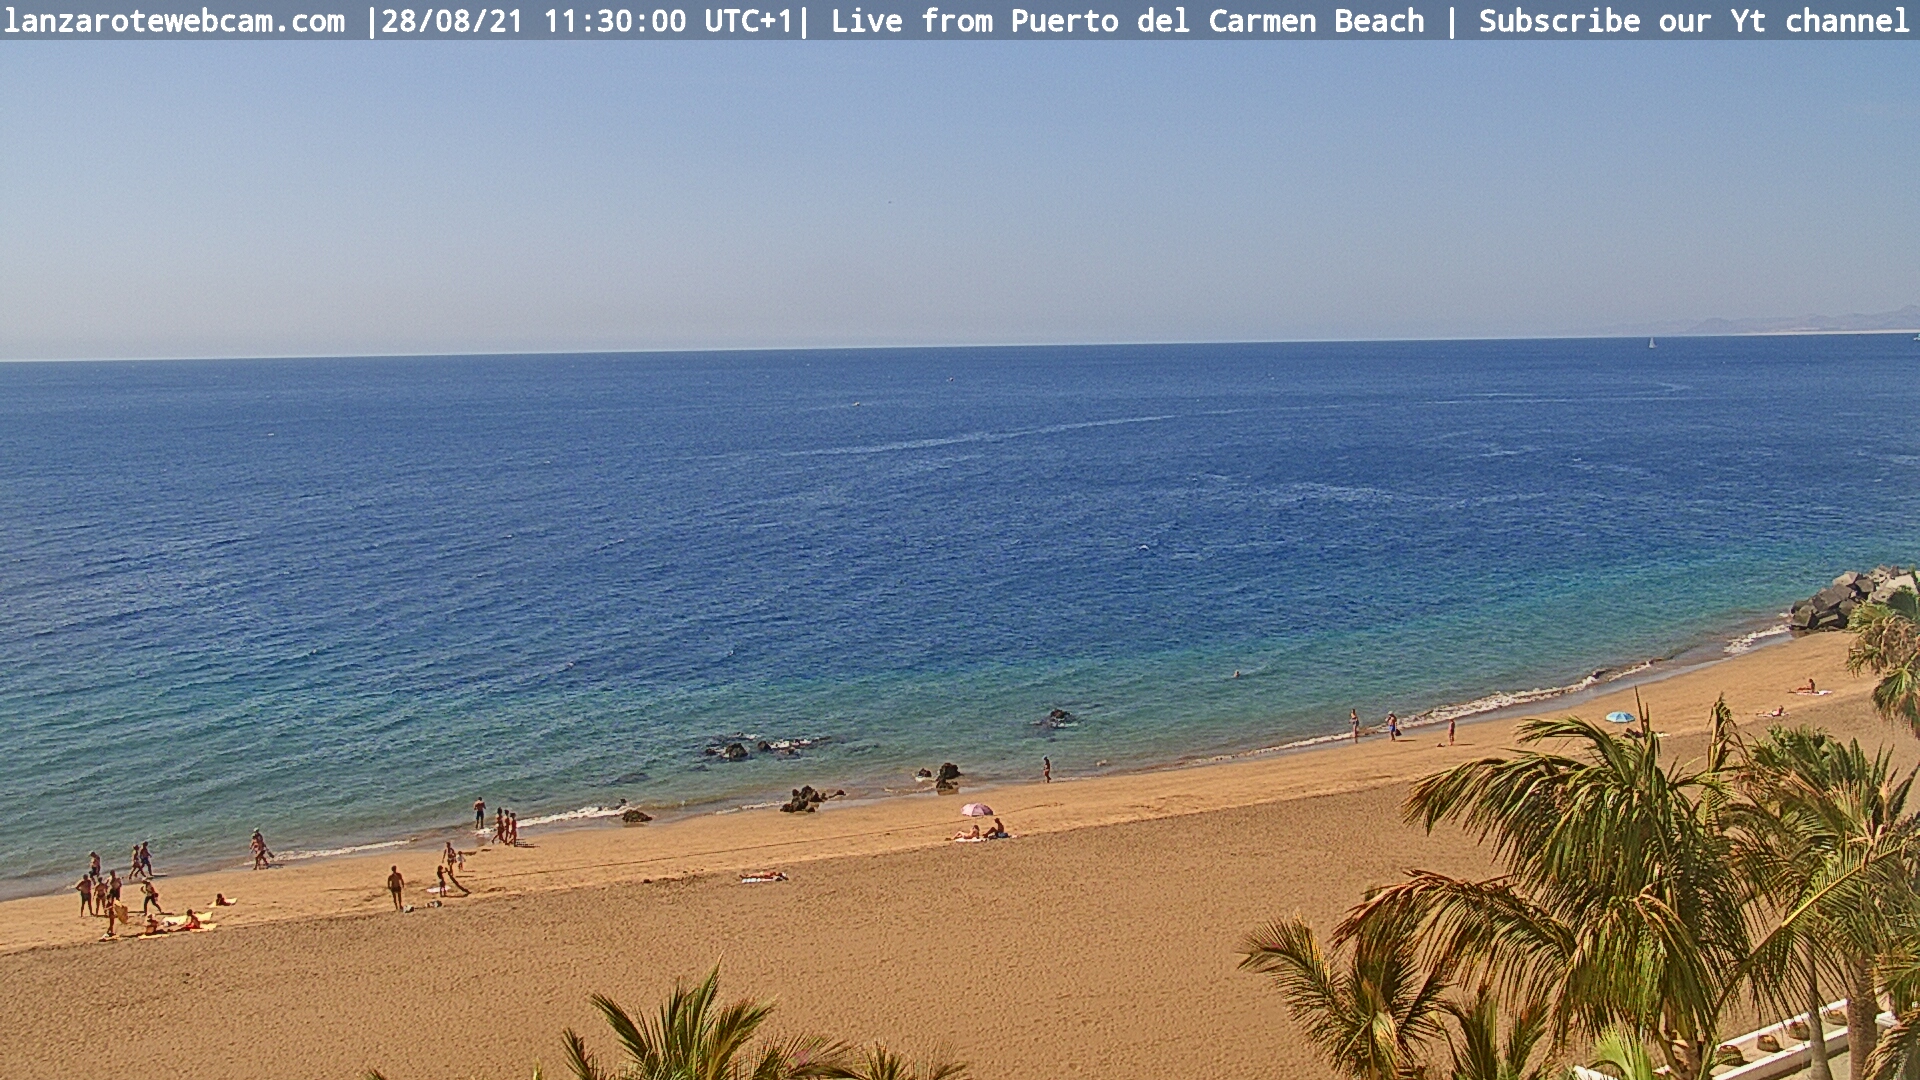 cerebro Emular ropa interior Puerto del Carmen Beach SnapShot - Lanzarote Webcam